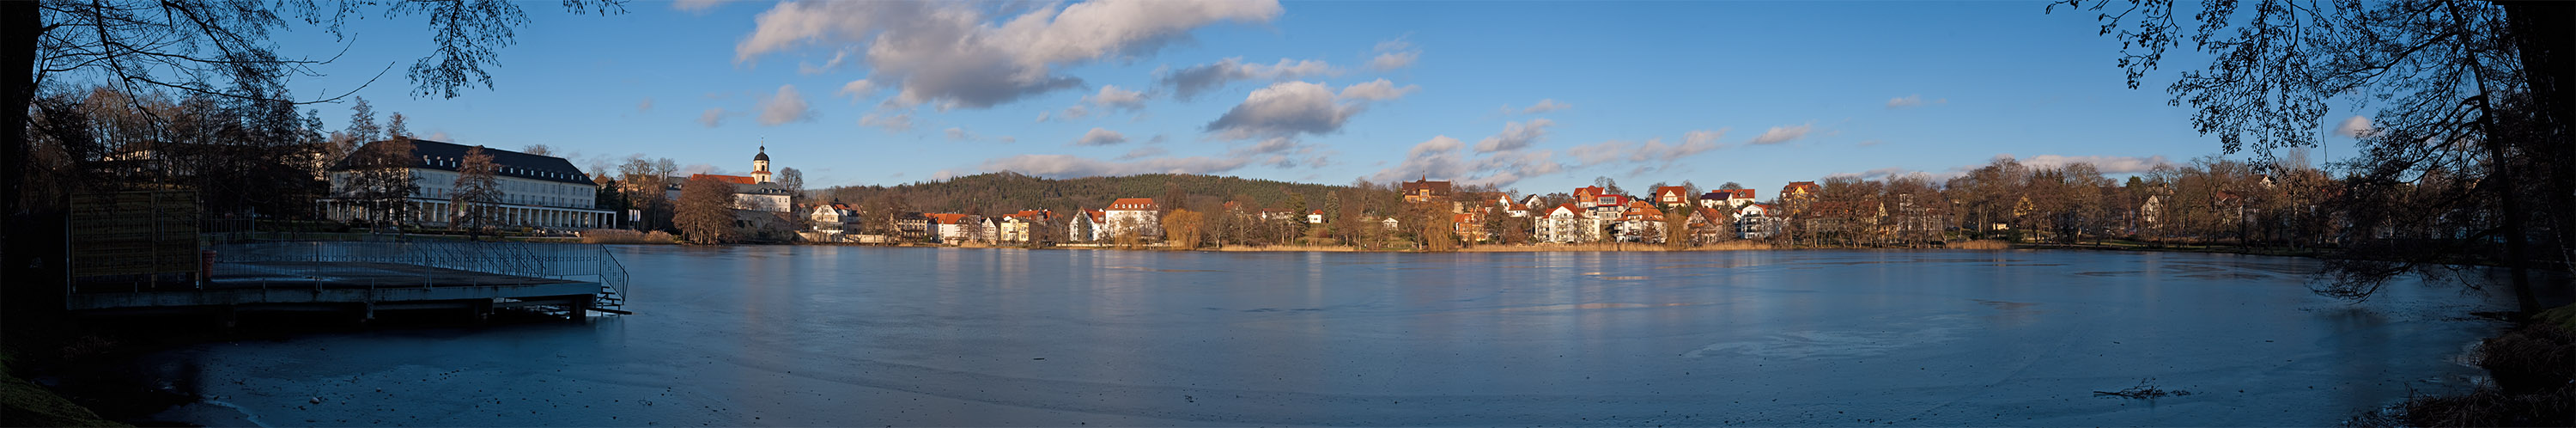 Burgsee Bad Salzungen